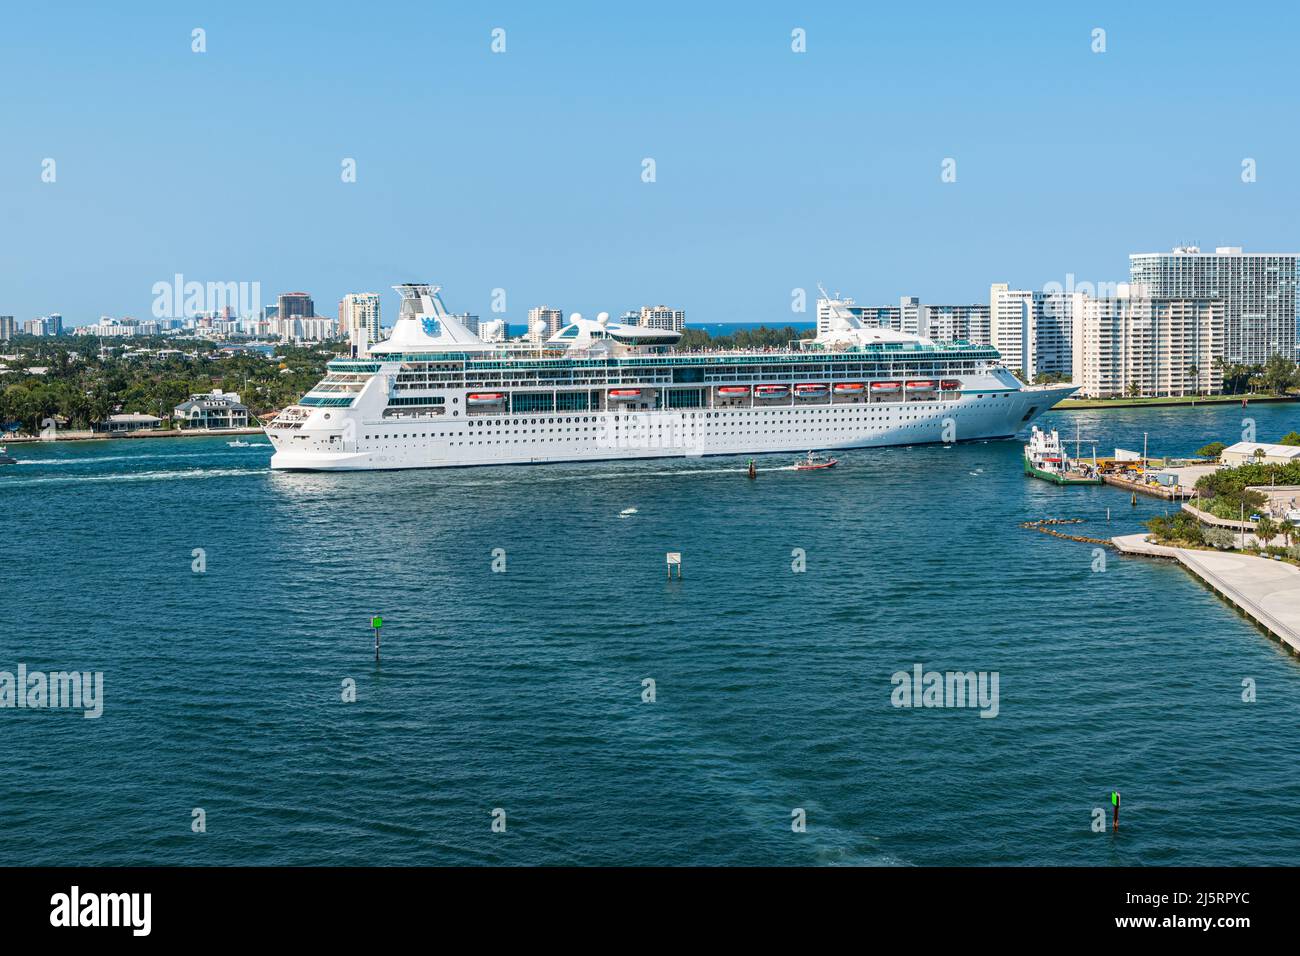 FORT LAUDERDALE, FLORIDE - le 28 MARS 2022 : bateau de croisière Royal Caribbean Vision of the Seas qui navigue loin du port Everglades de fort Lauderdale, en Floride. Banque D'Images